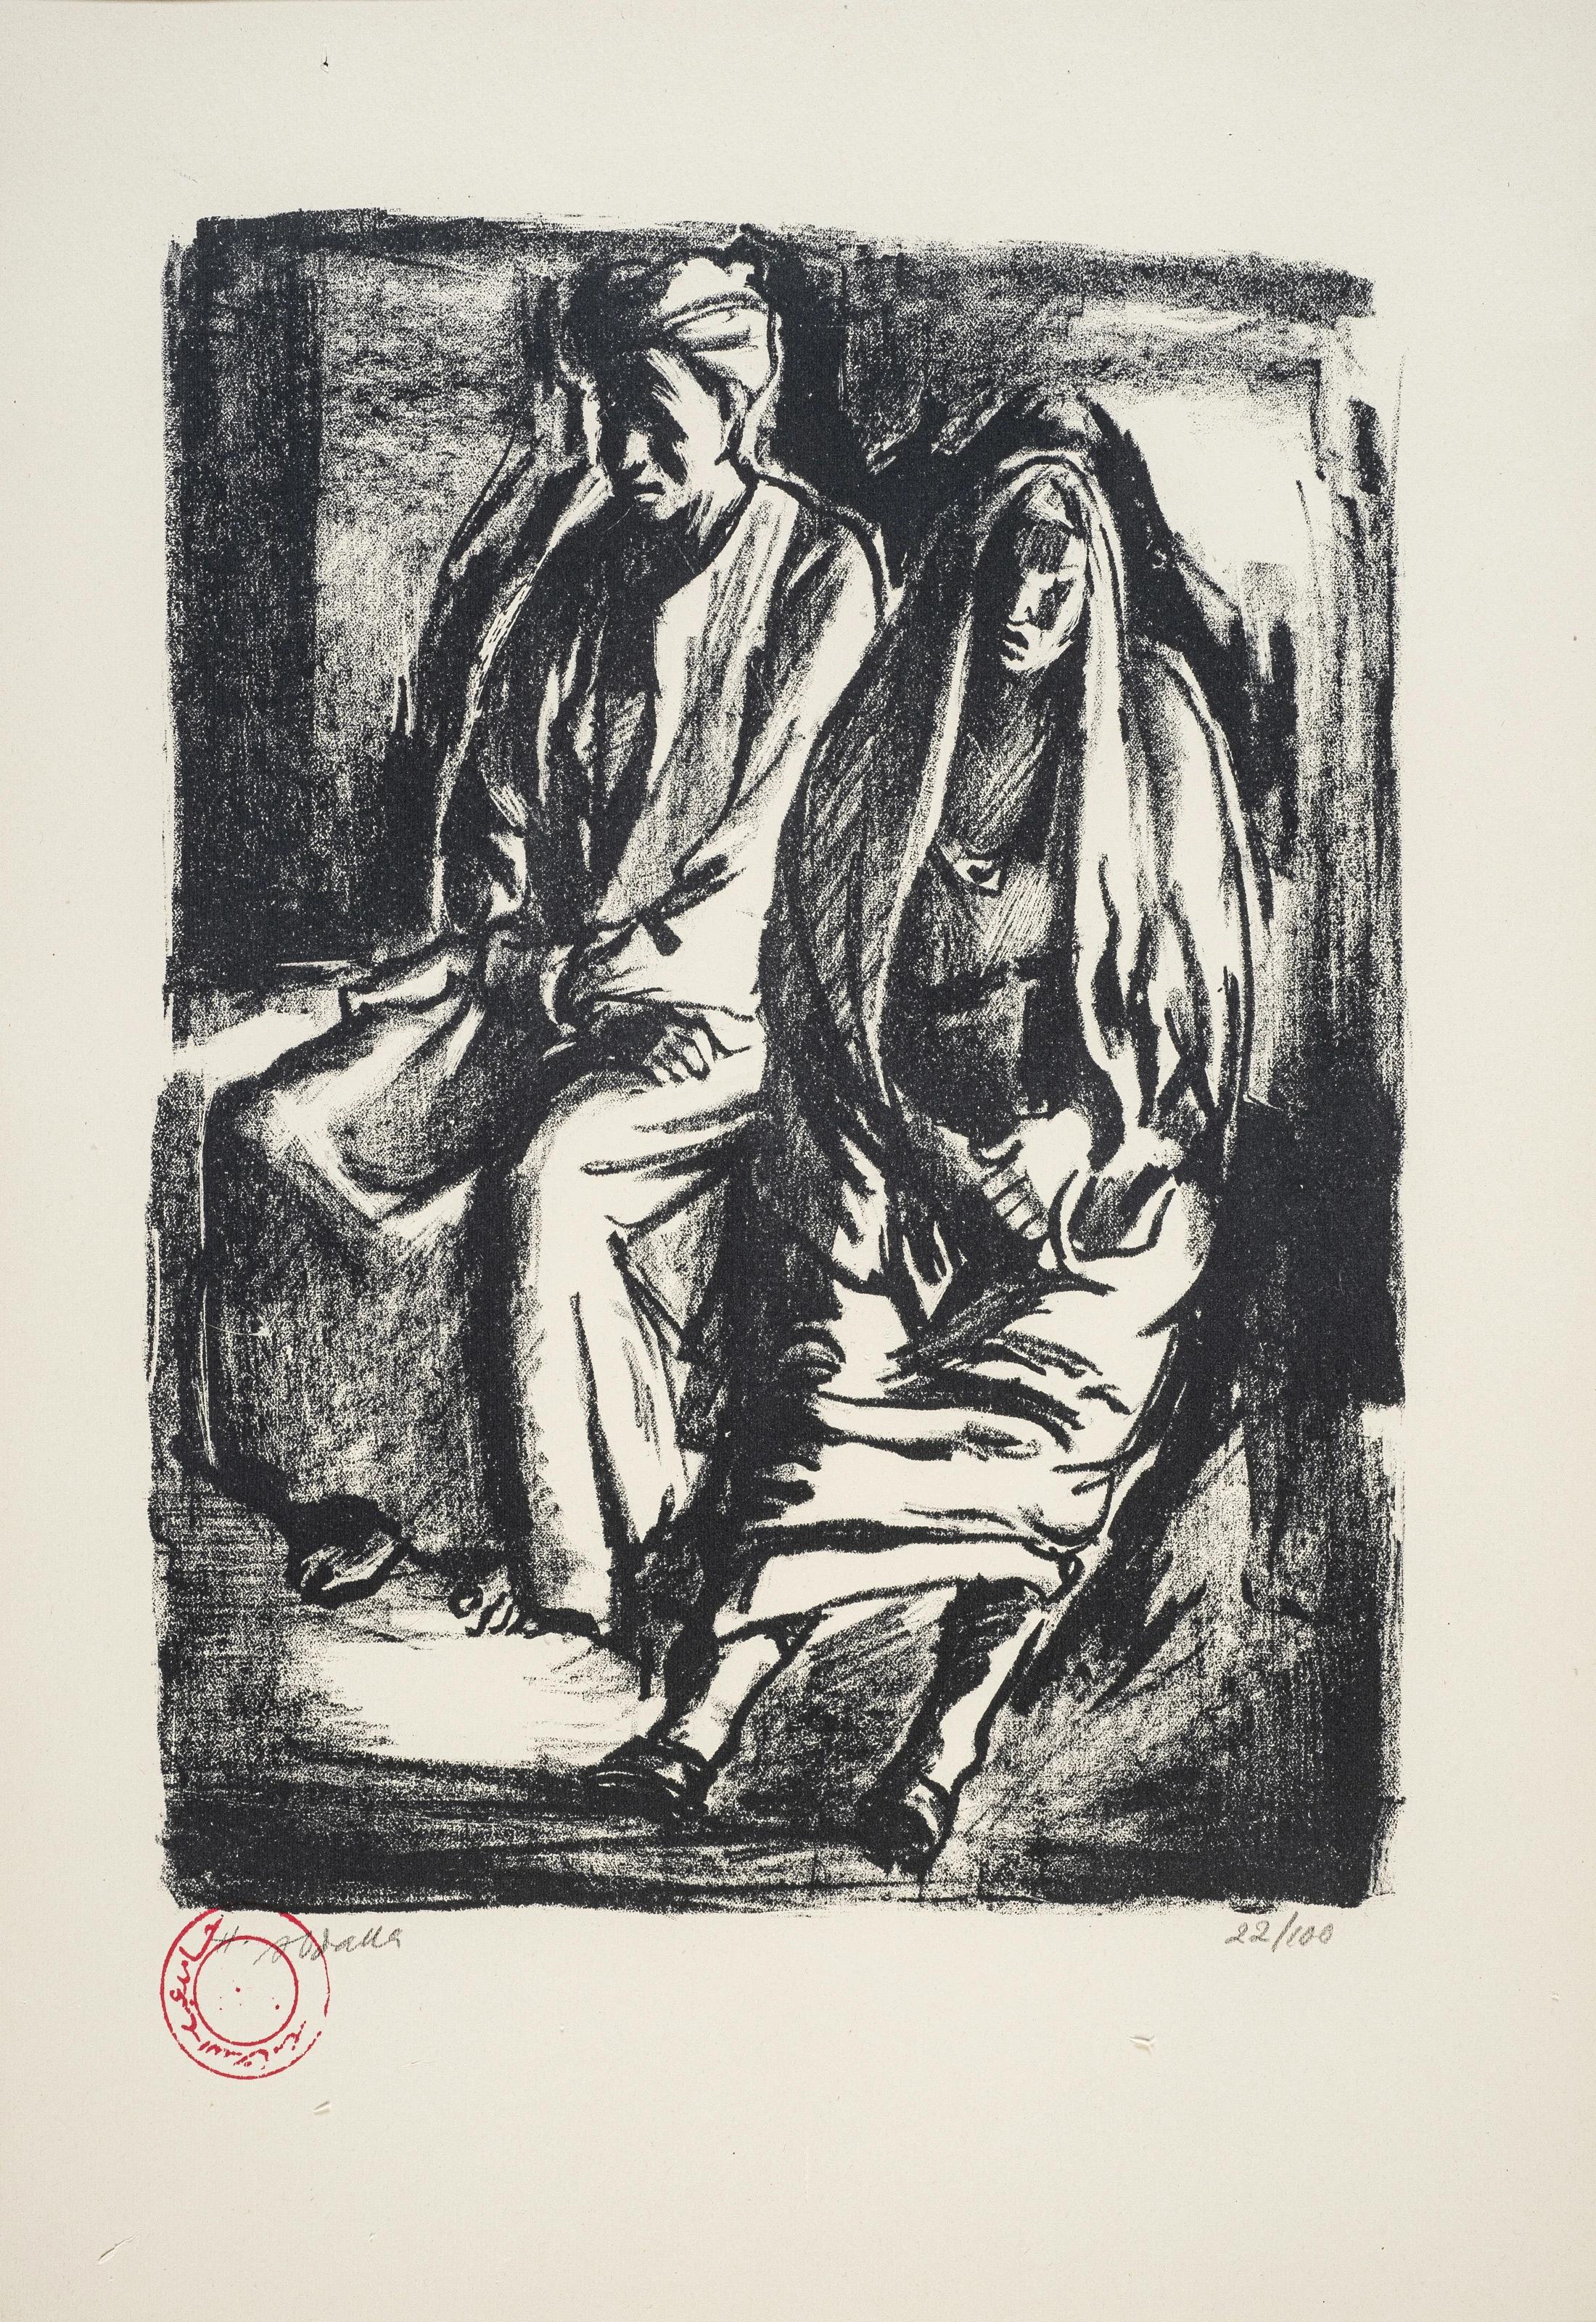 "Ehemann und Ehefrau" signierte Lithographie 14 "x10" in Auflage 22/100 von Hamed Abdalla

Hamed Abdallah (1917-1985), ein Wegbereiter des ägyptischen und arabischen Modernismus, ging in seiner künstlerischen Arbeit noch einen Schritt weiter, indem